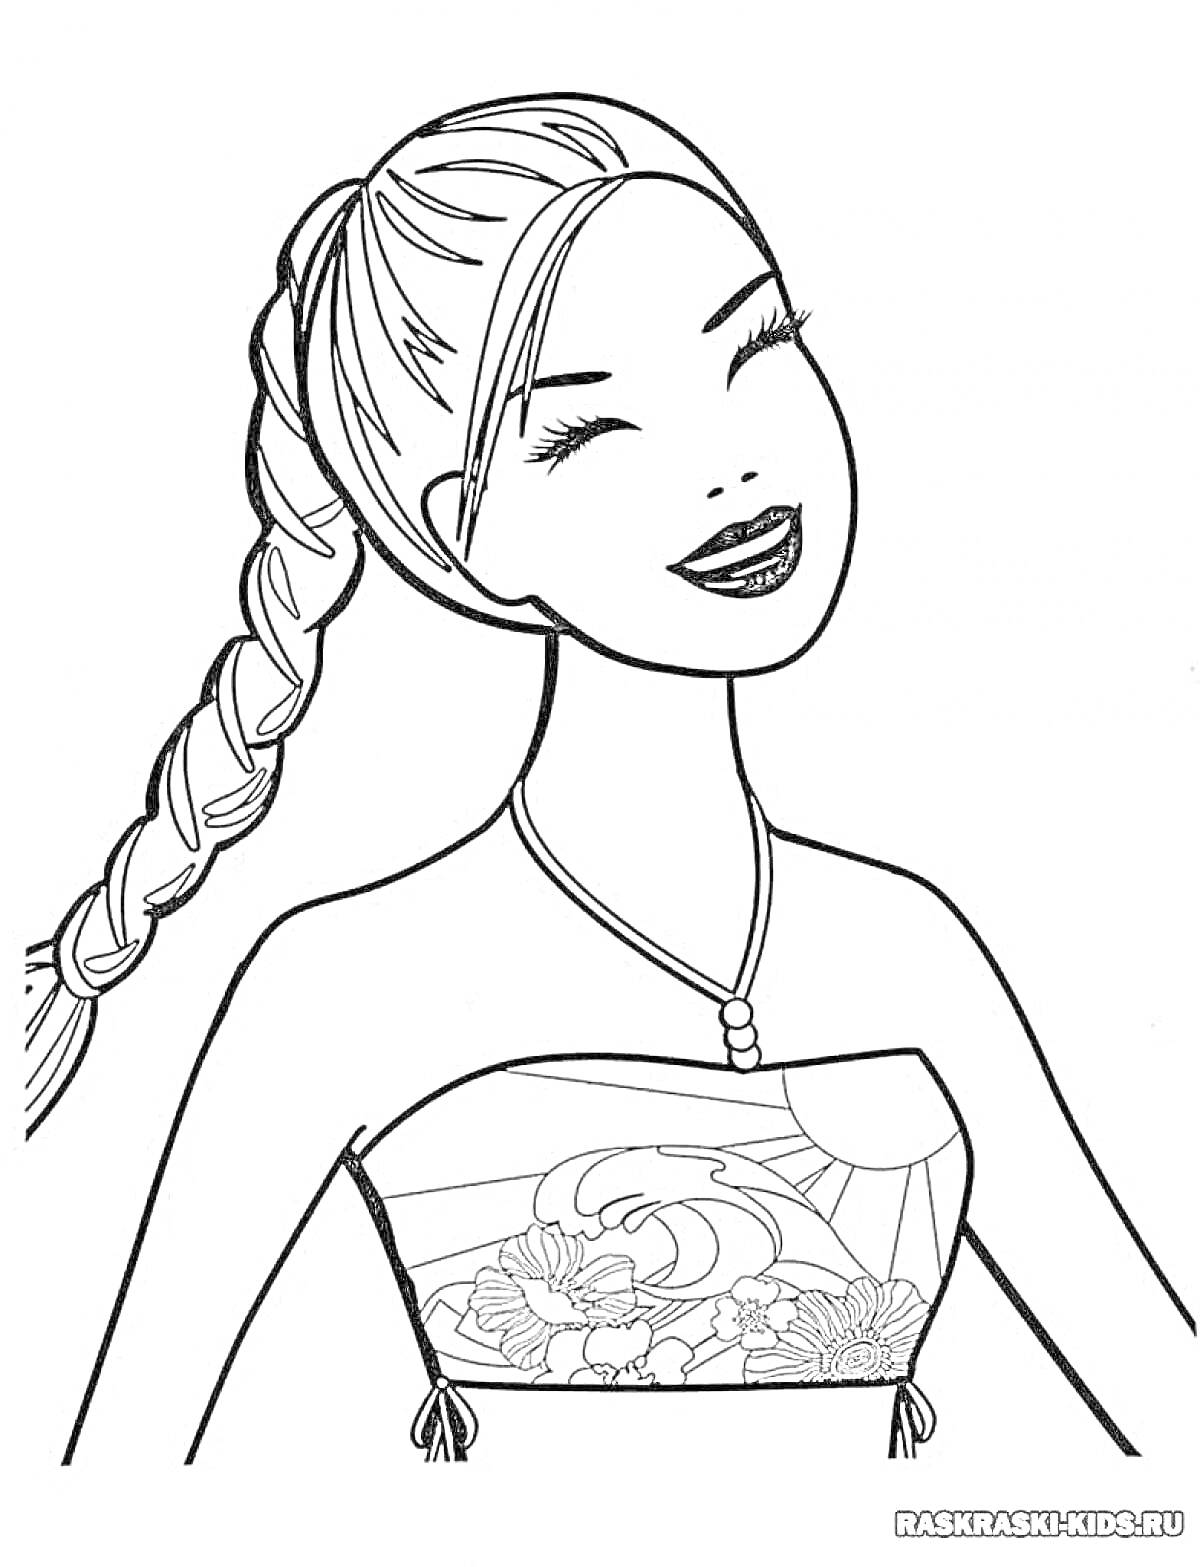 Раскраска Девушка с длинной заплетённой косой и цветочным узором на топе